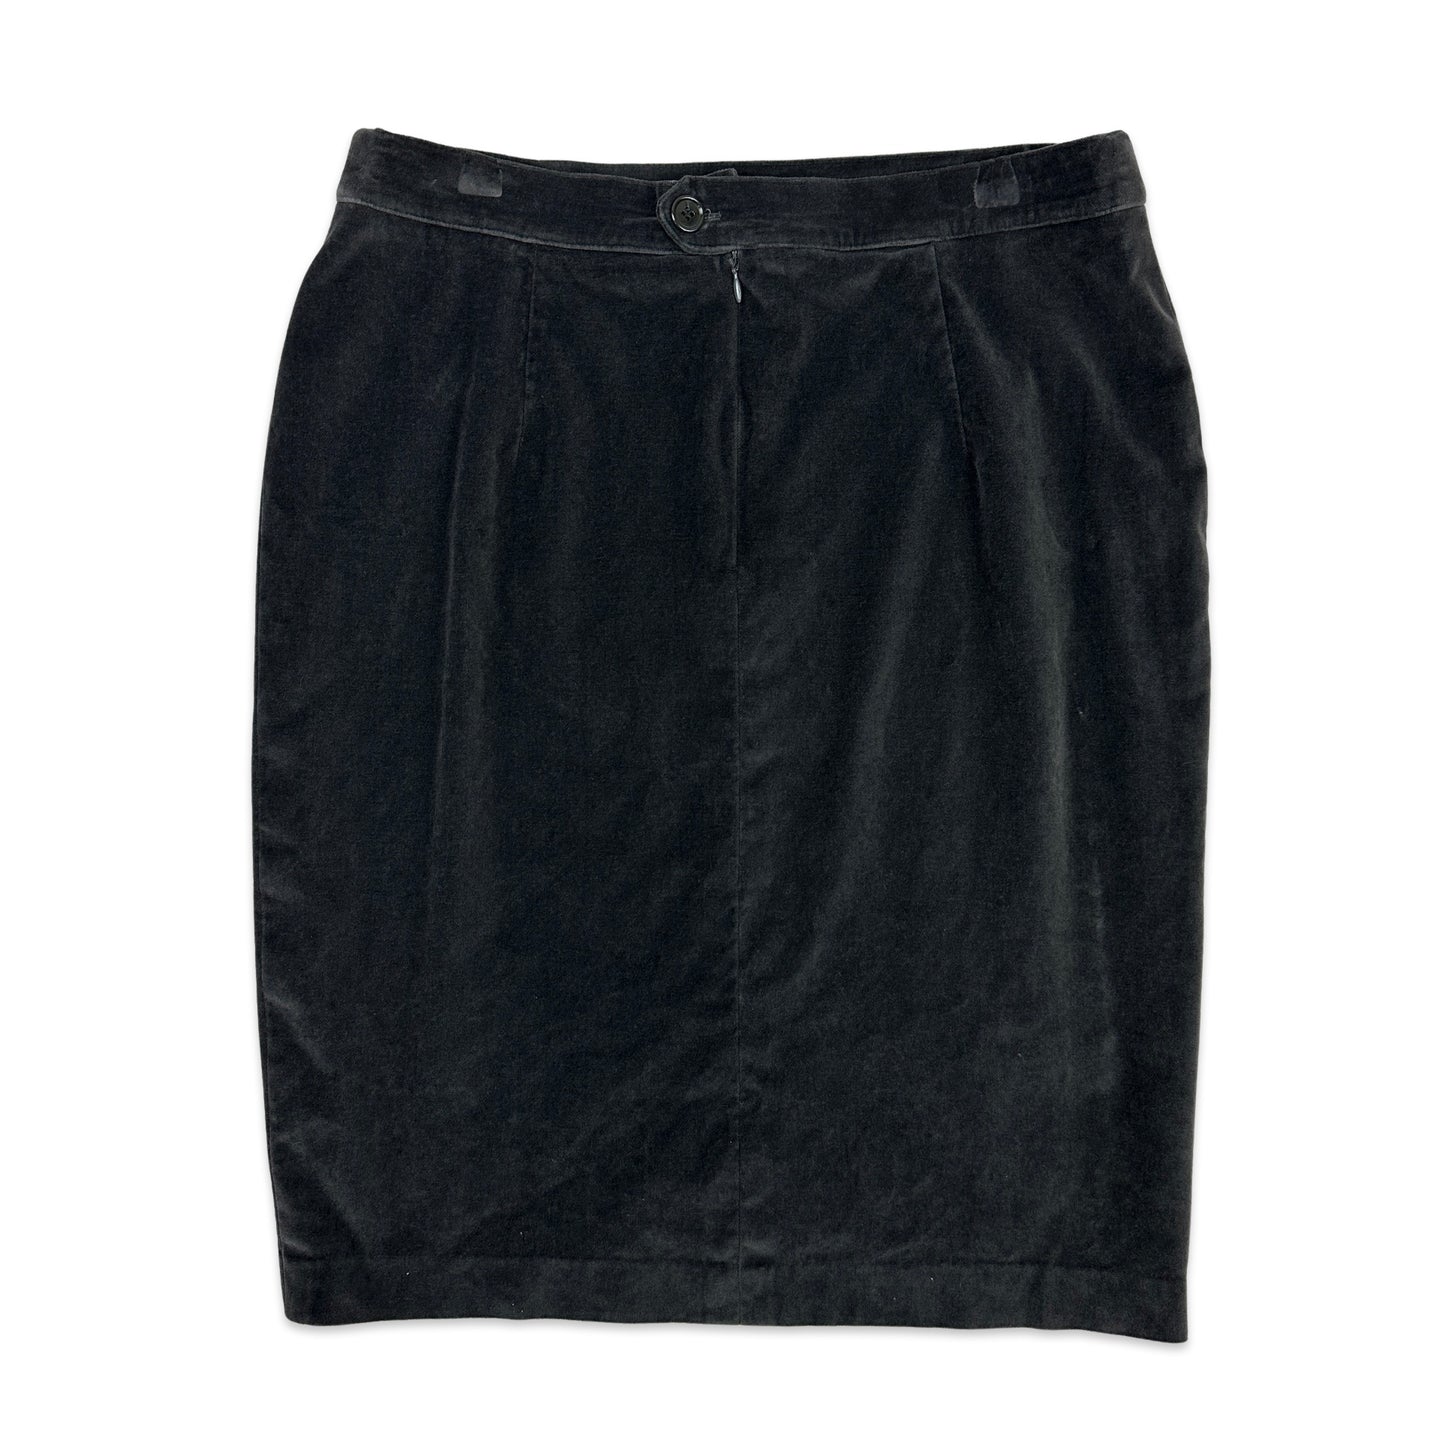 90s Vintage Grey Velvet Pencil Skirt 14/16